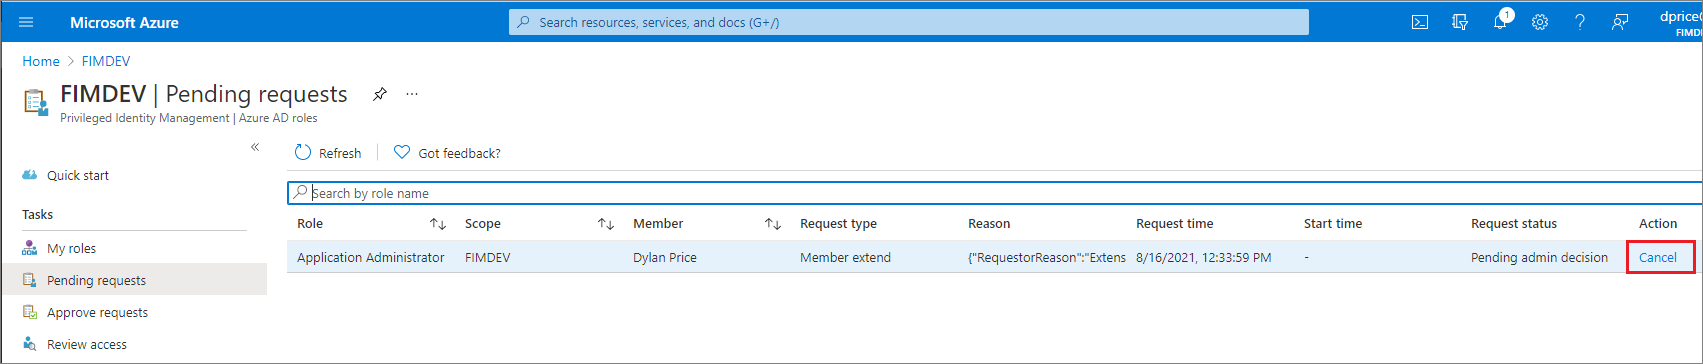 Schermopname van Microsoft Entra-rollen: pagina Aanvragen in behandeling met een aangevraagde aanvraag en een koppeling naar Annuleren.